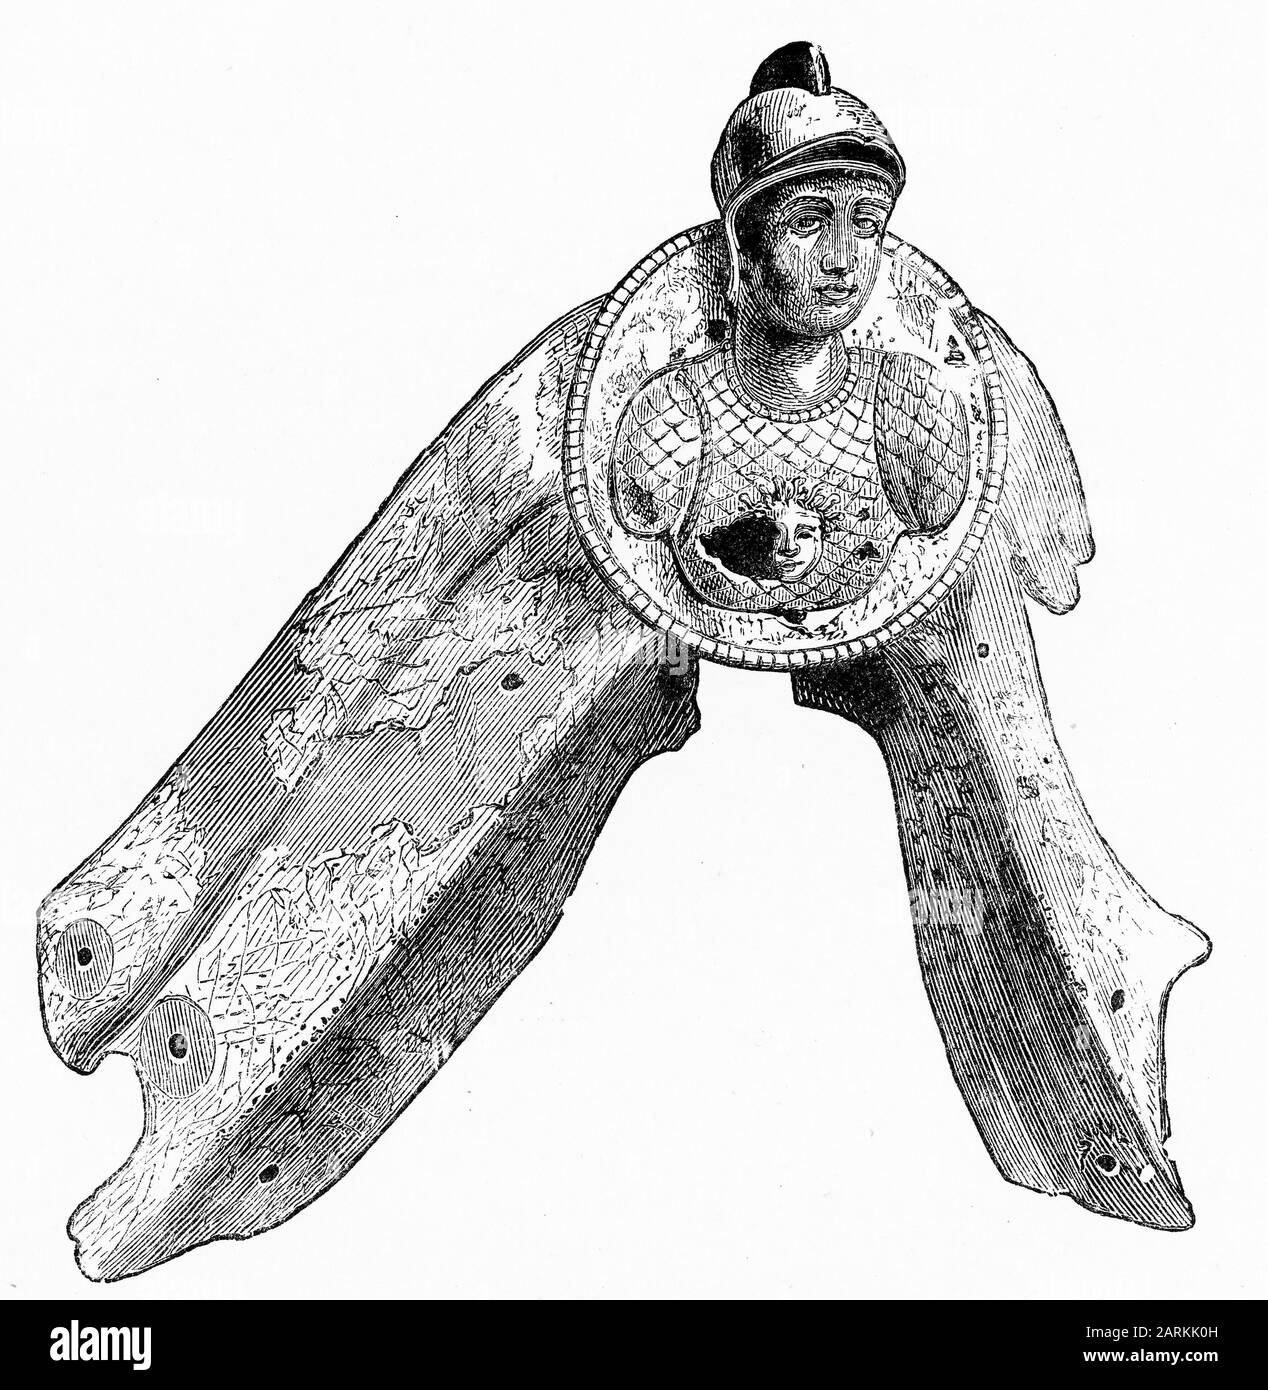 Gravur der Figur der römischen Galeere Minerva, die in der Schlacht von Actium kämpfte, kämpfte zwischen der Flotte von Octavian und den kombinierten Truppen von Mark Antony und Königin Kleopatra von Ägypten am 2. September 31 v. Chr. im Ionischen Meer nahe dem Vorgebirge von Actium in Griechenland. Stockfoto